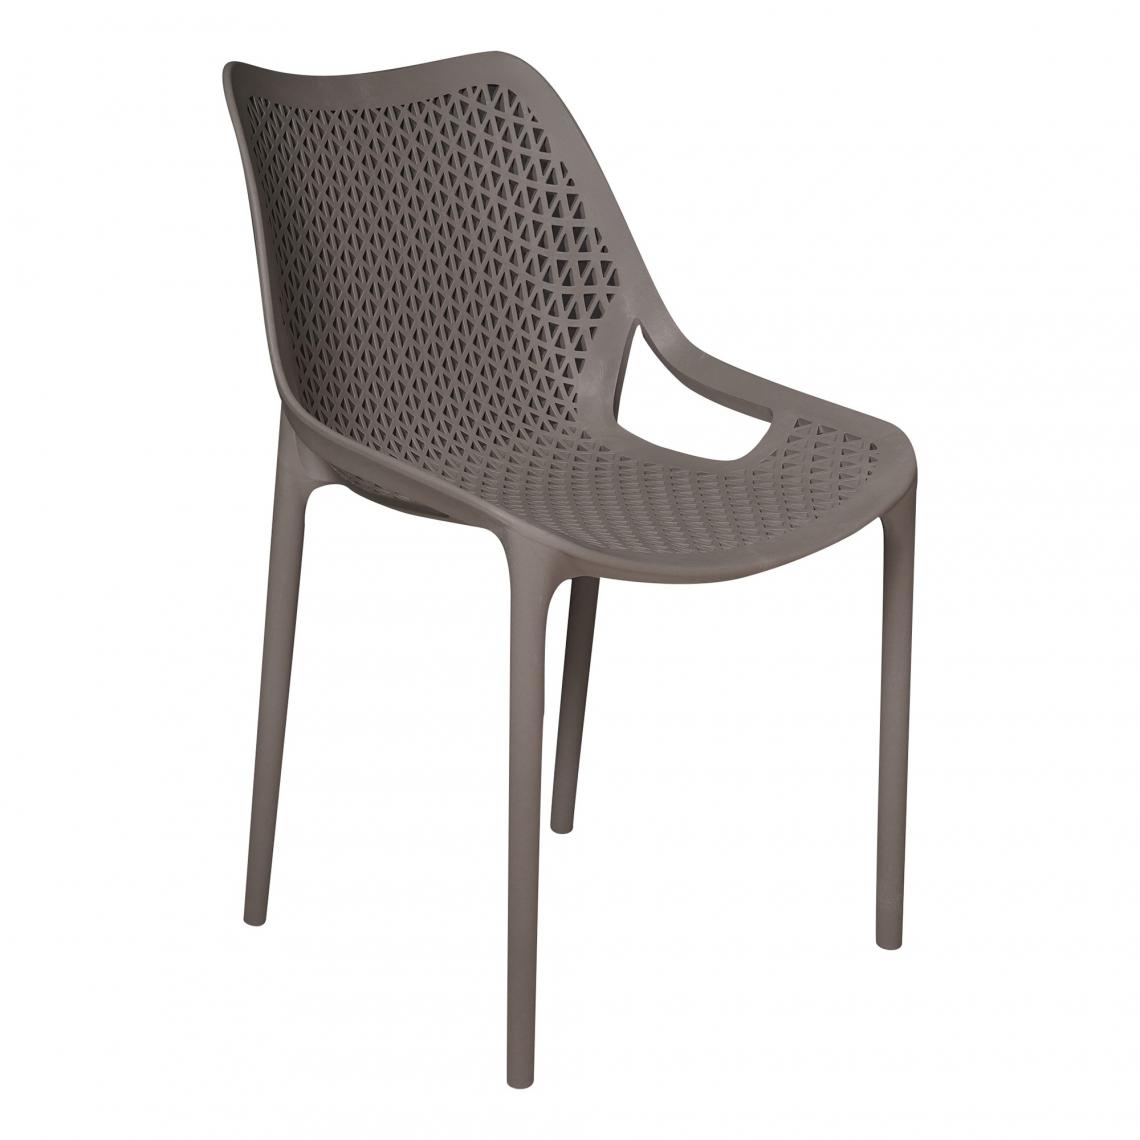 Alter - Chaise empilable avec accoudoirs, fauteuil perforé pour intérieur et extérieur, en polypropylène, 50x60h82 cm, couleur Gris - Chaises